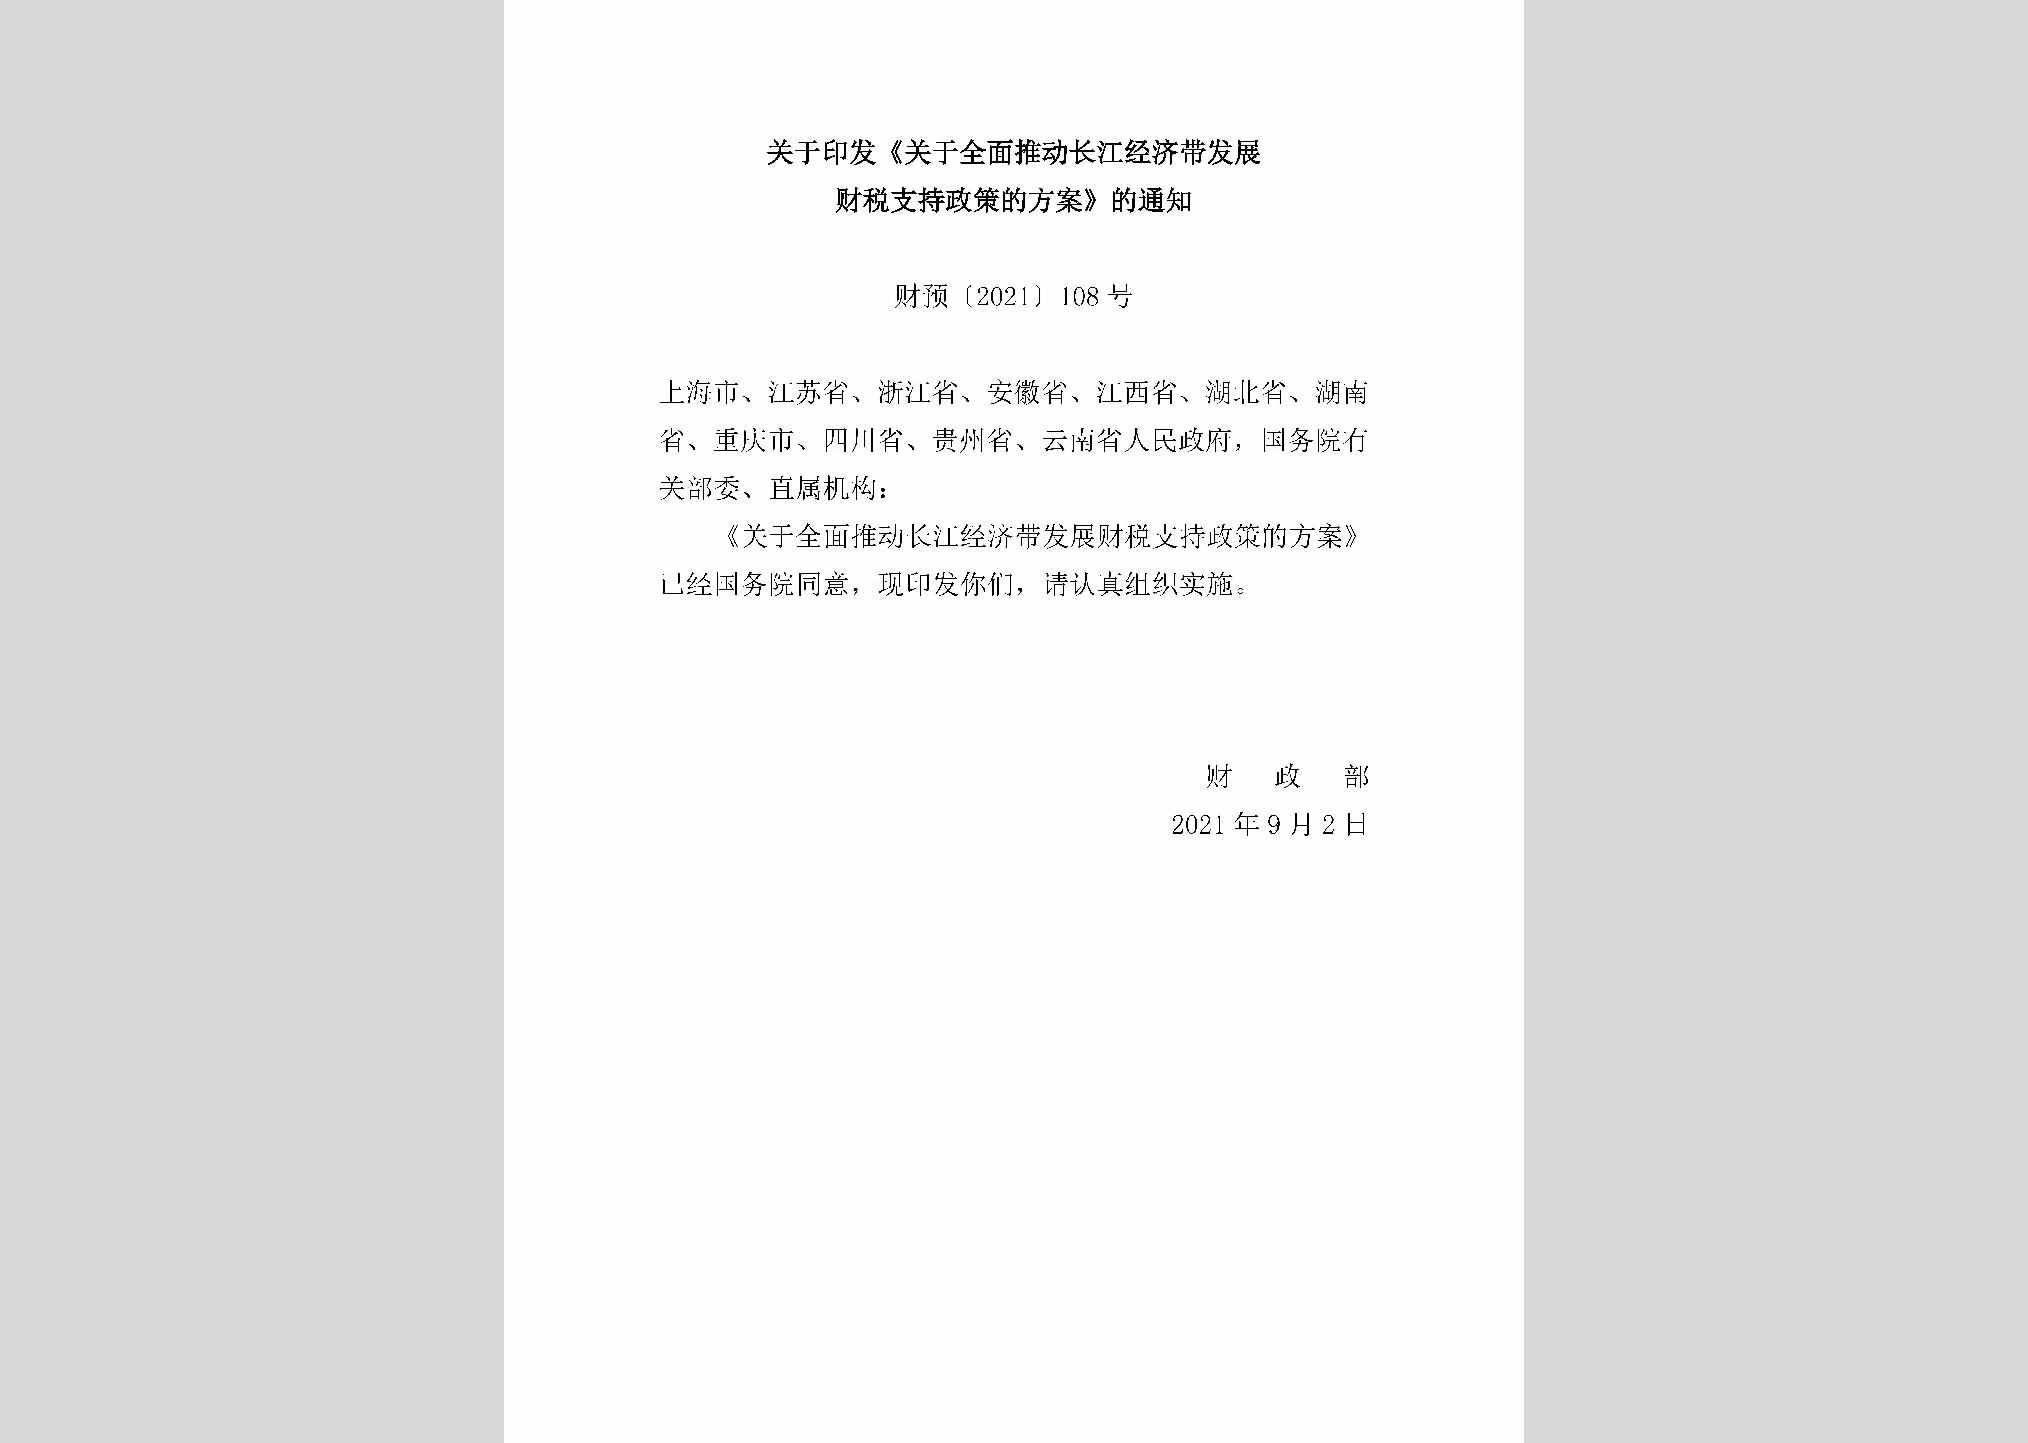 财预[2021]108号：关于印发《关于全面推动长江经济带发展财税支持政策的方案》的通知